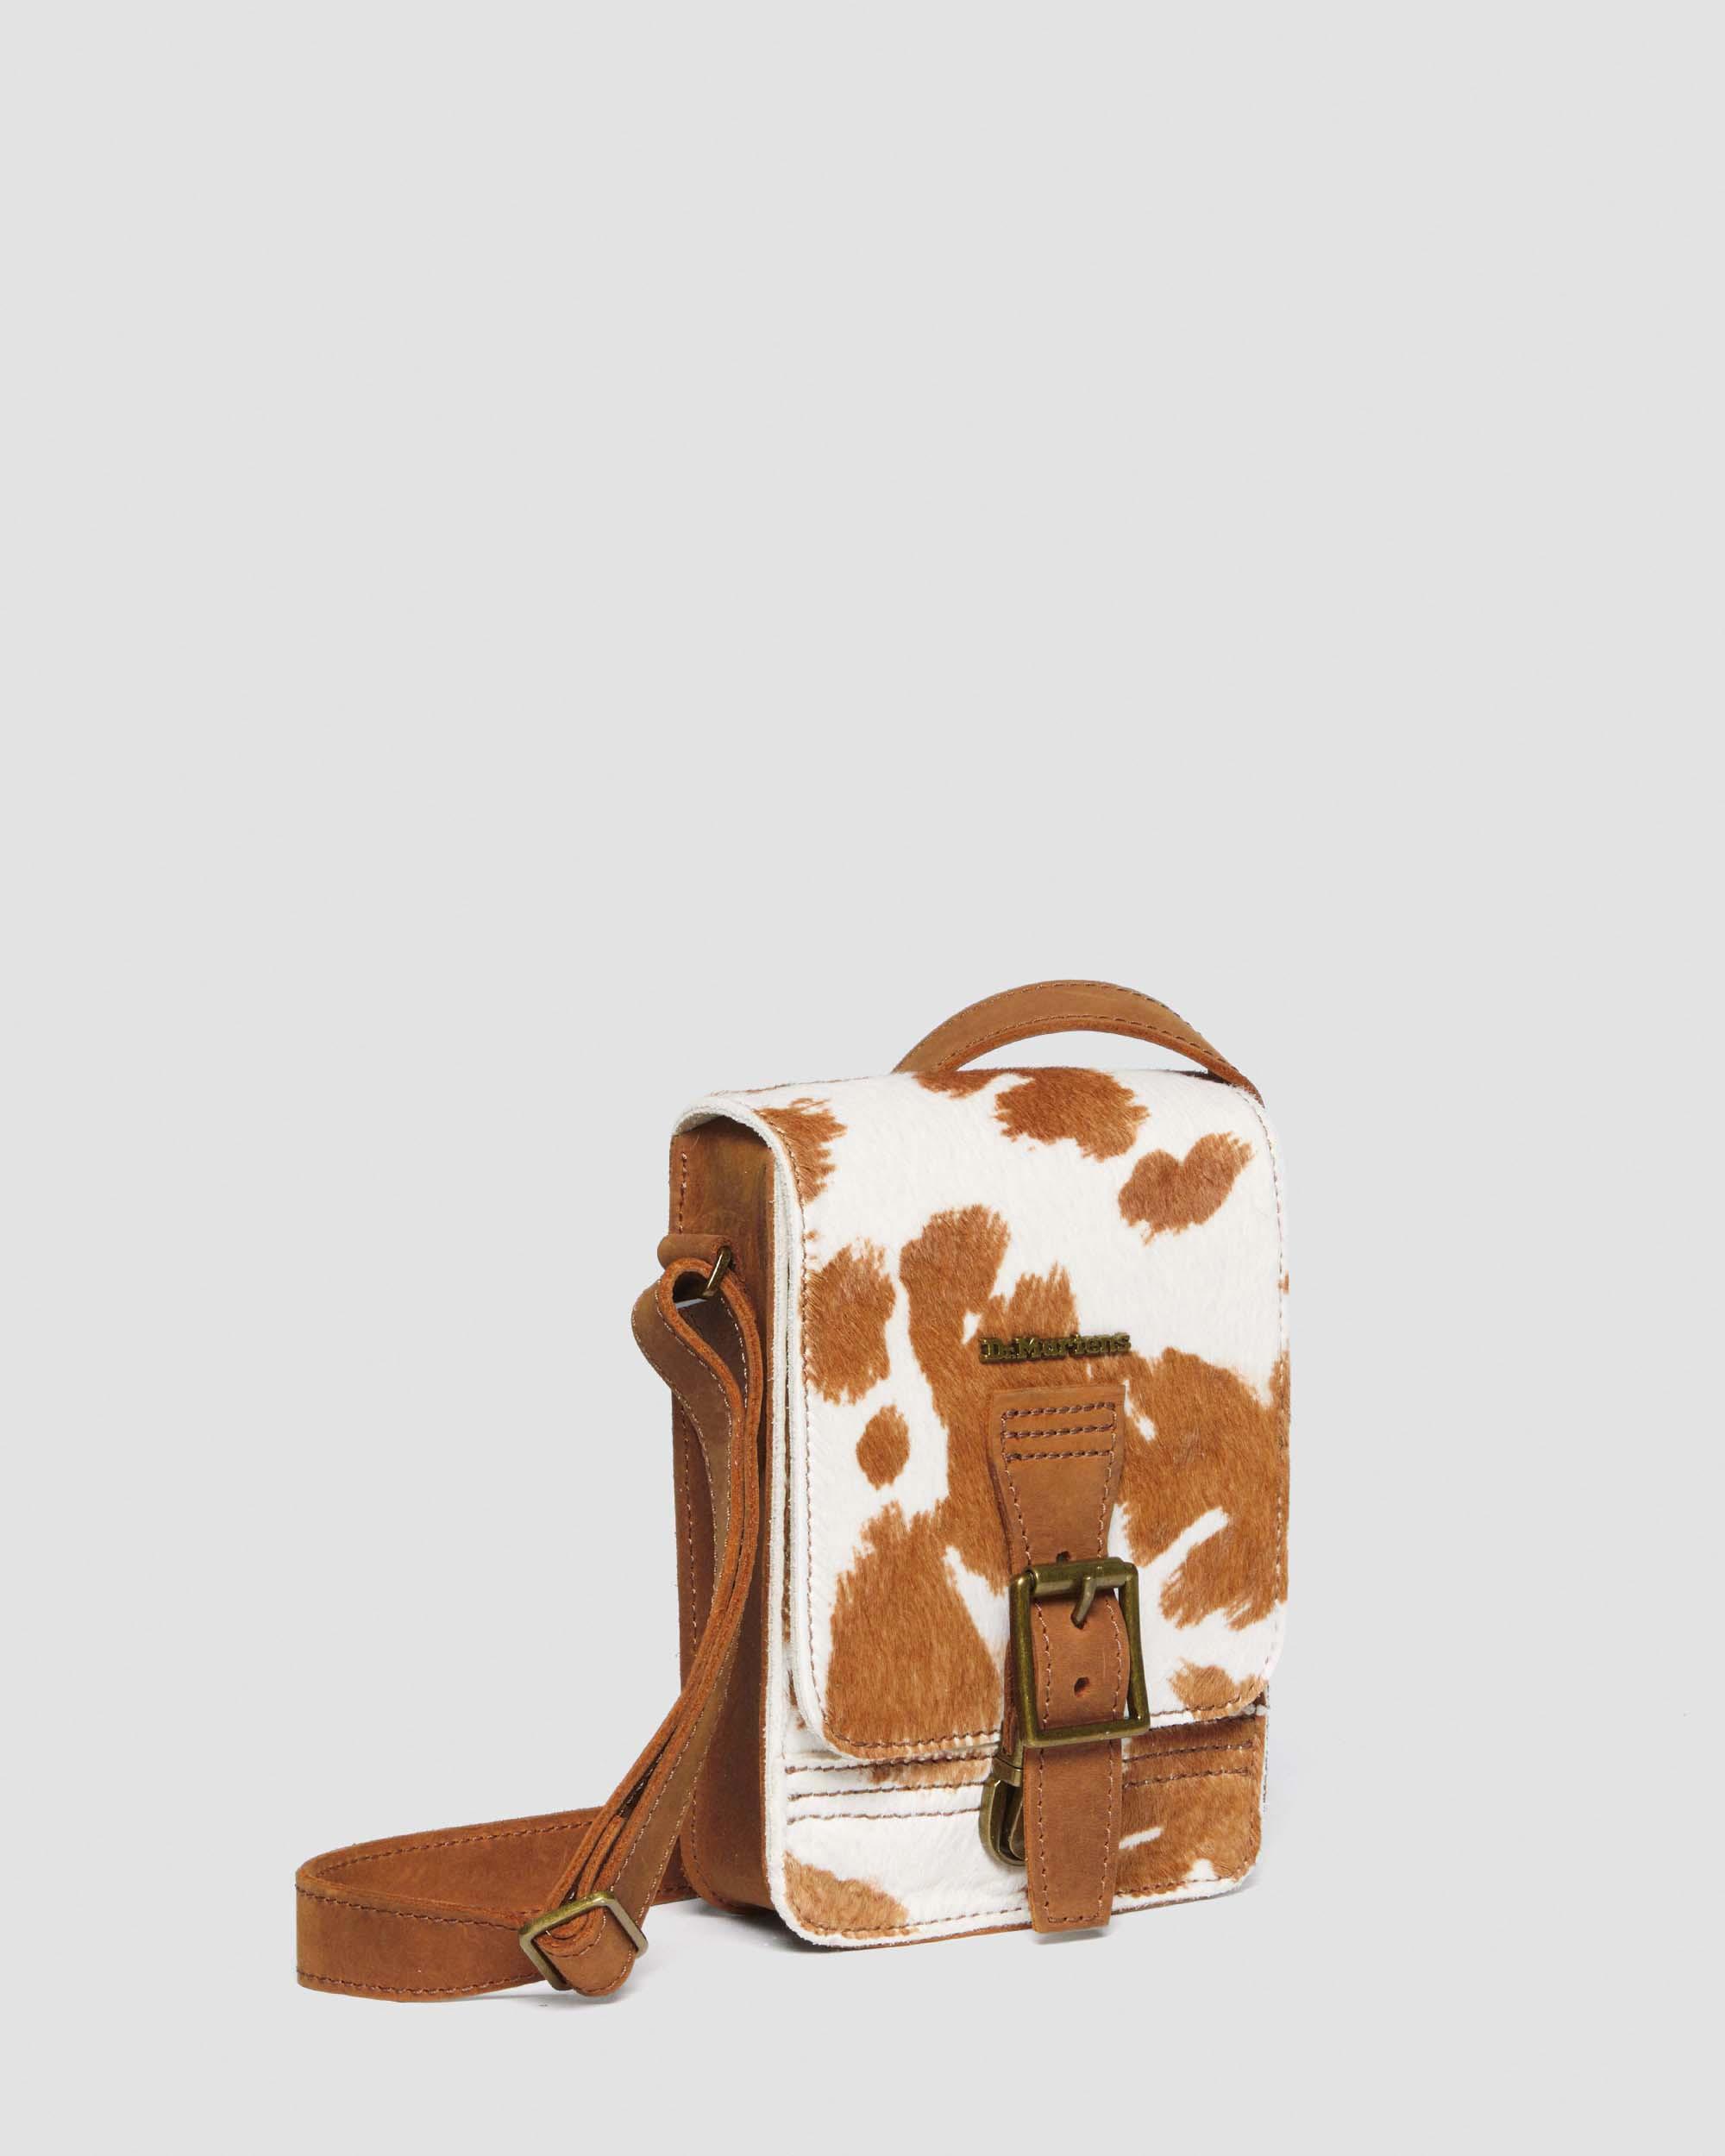 crossbody cow print purse